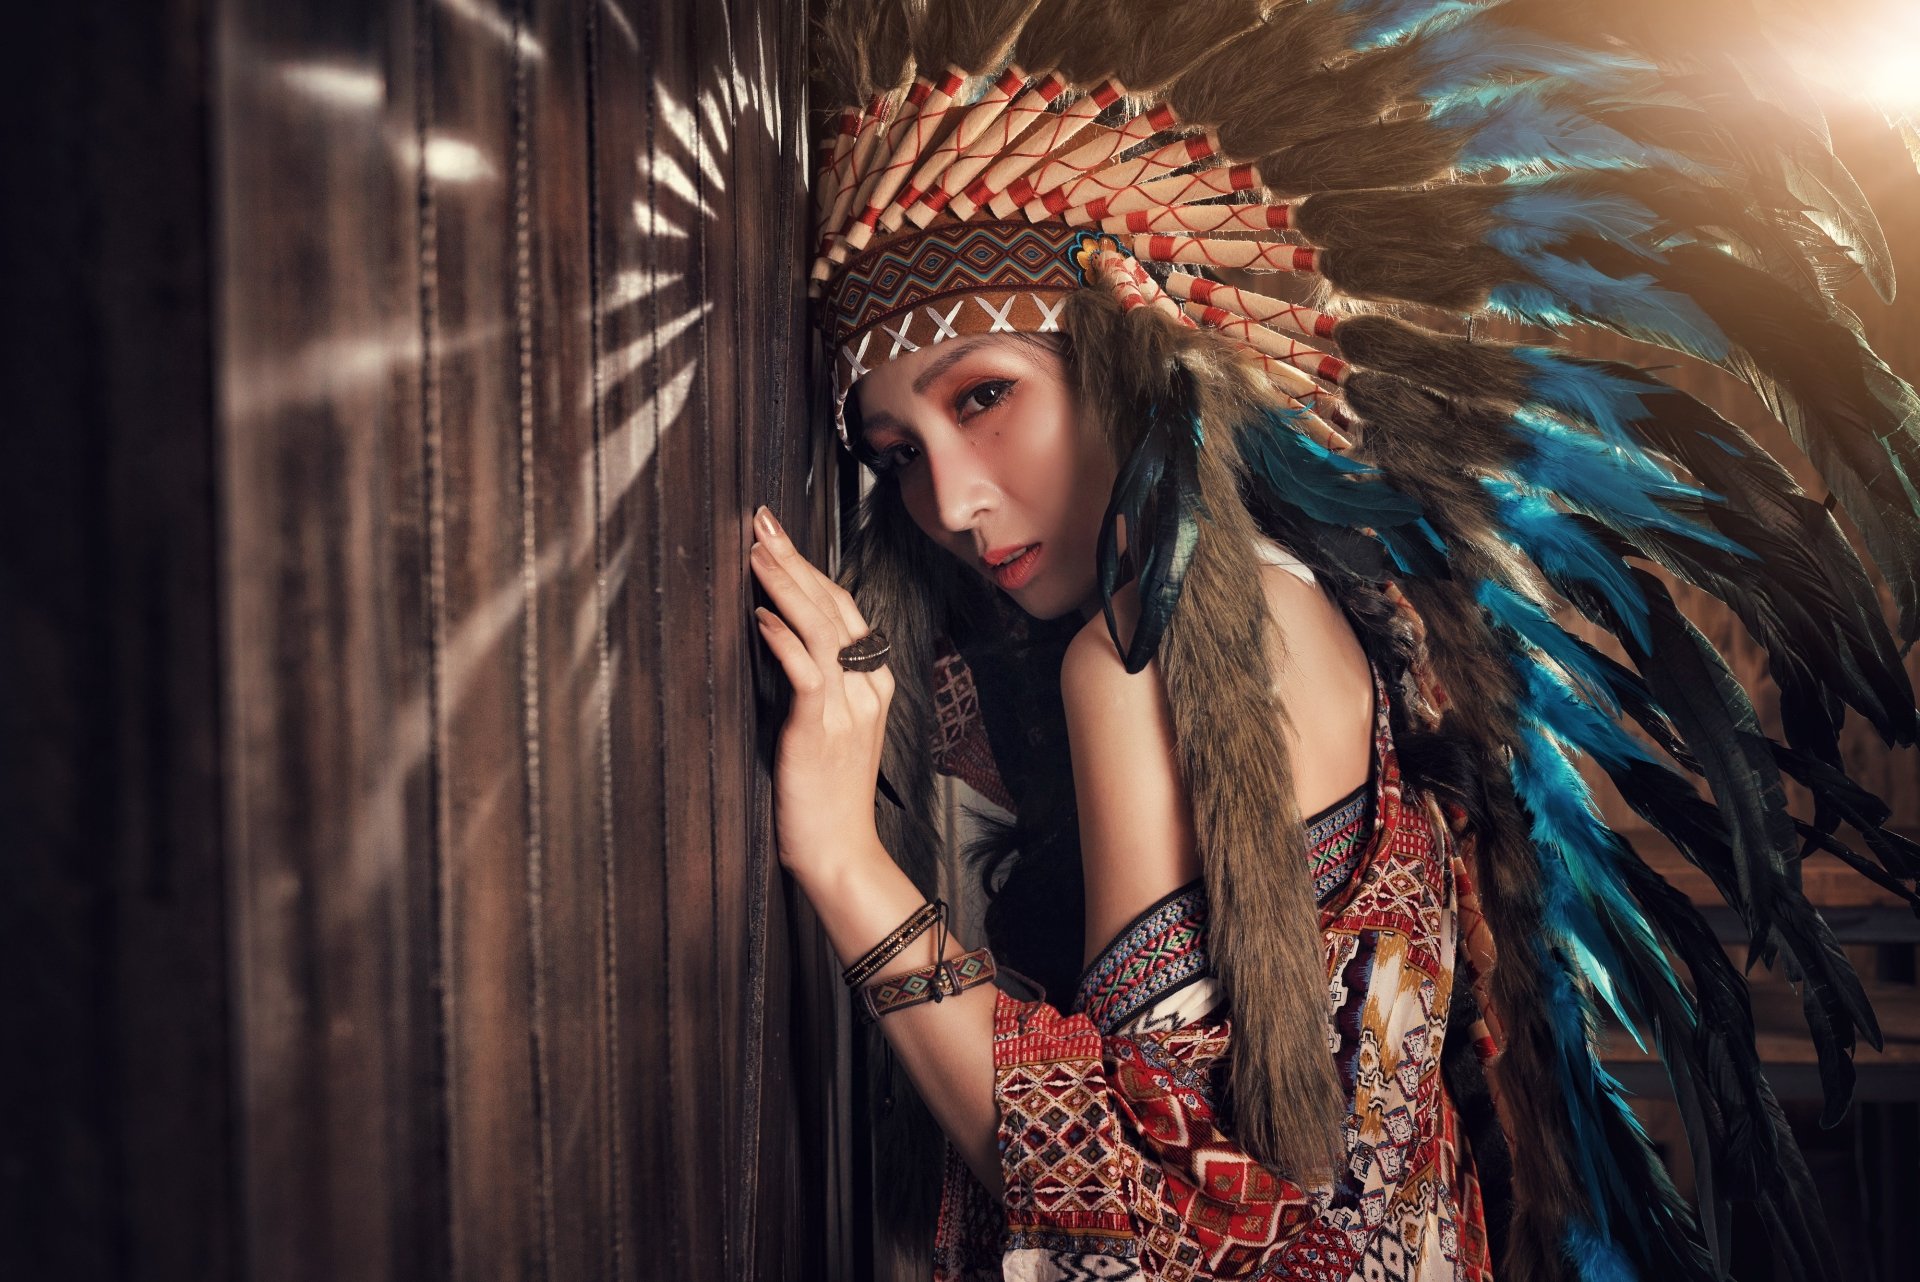 native tapete,haar,schönheit,mode,schwarzes haar,fotografie